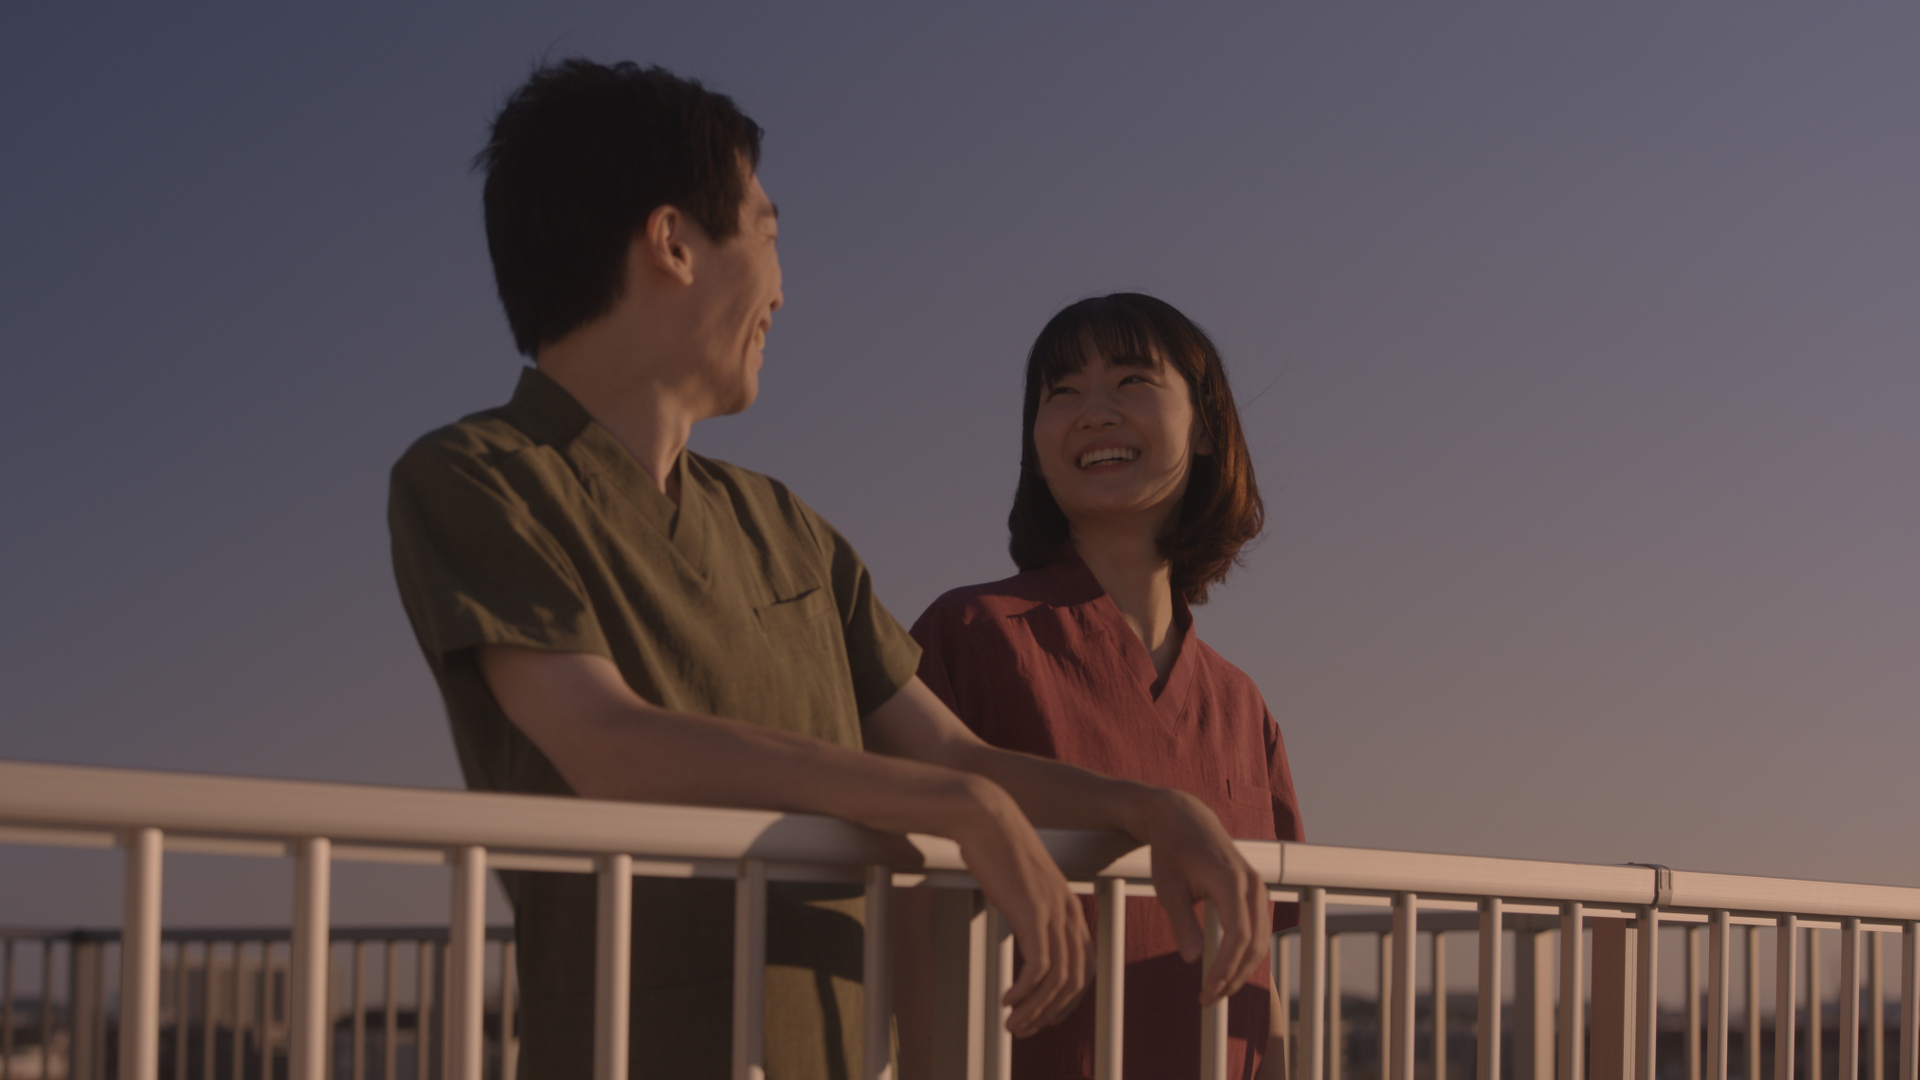 SOMPOケアテレビＣＭ第三弾「いつか日本を支える仕事」篇 CMソング担当「なつかしい未来」